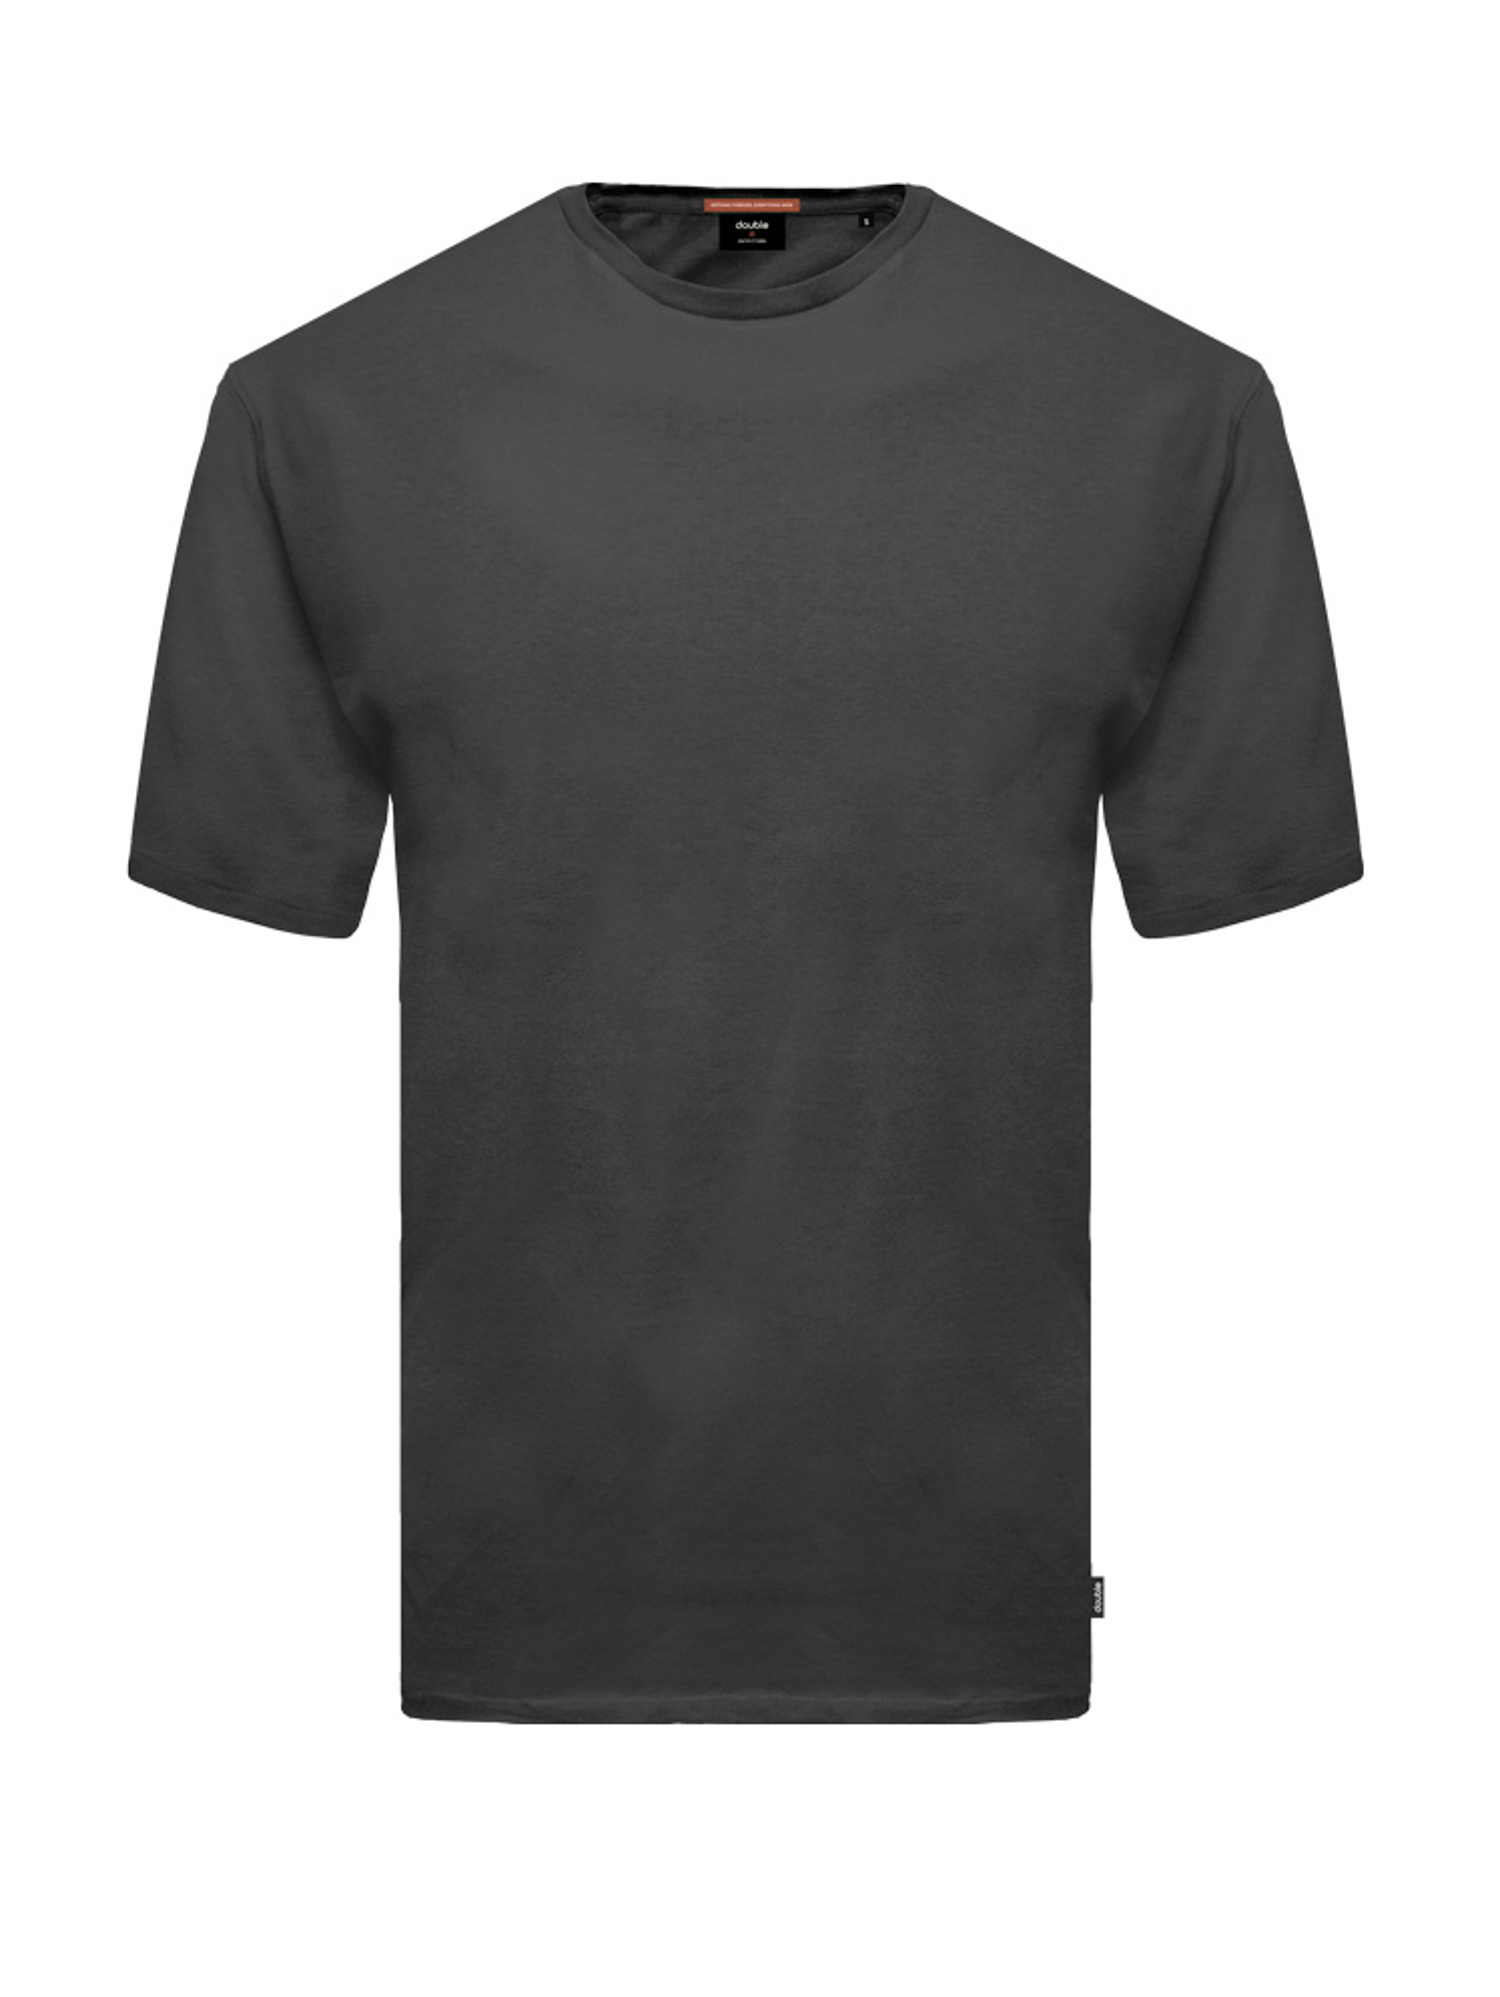 Βαμβακερή Μπλούζα Μακό Ανδρική - Μαύρο